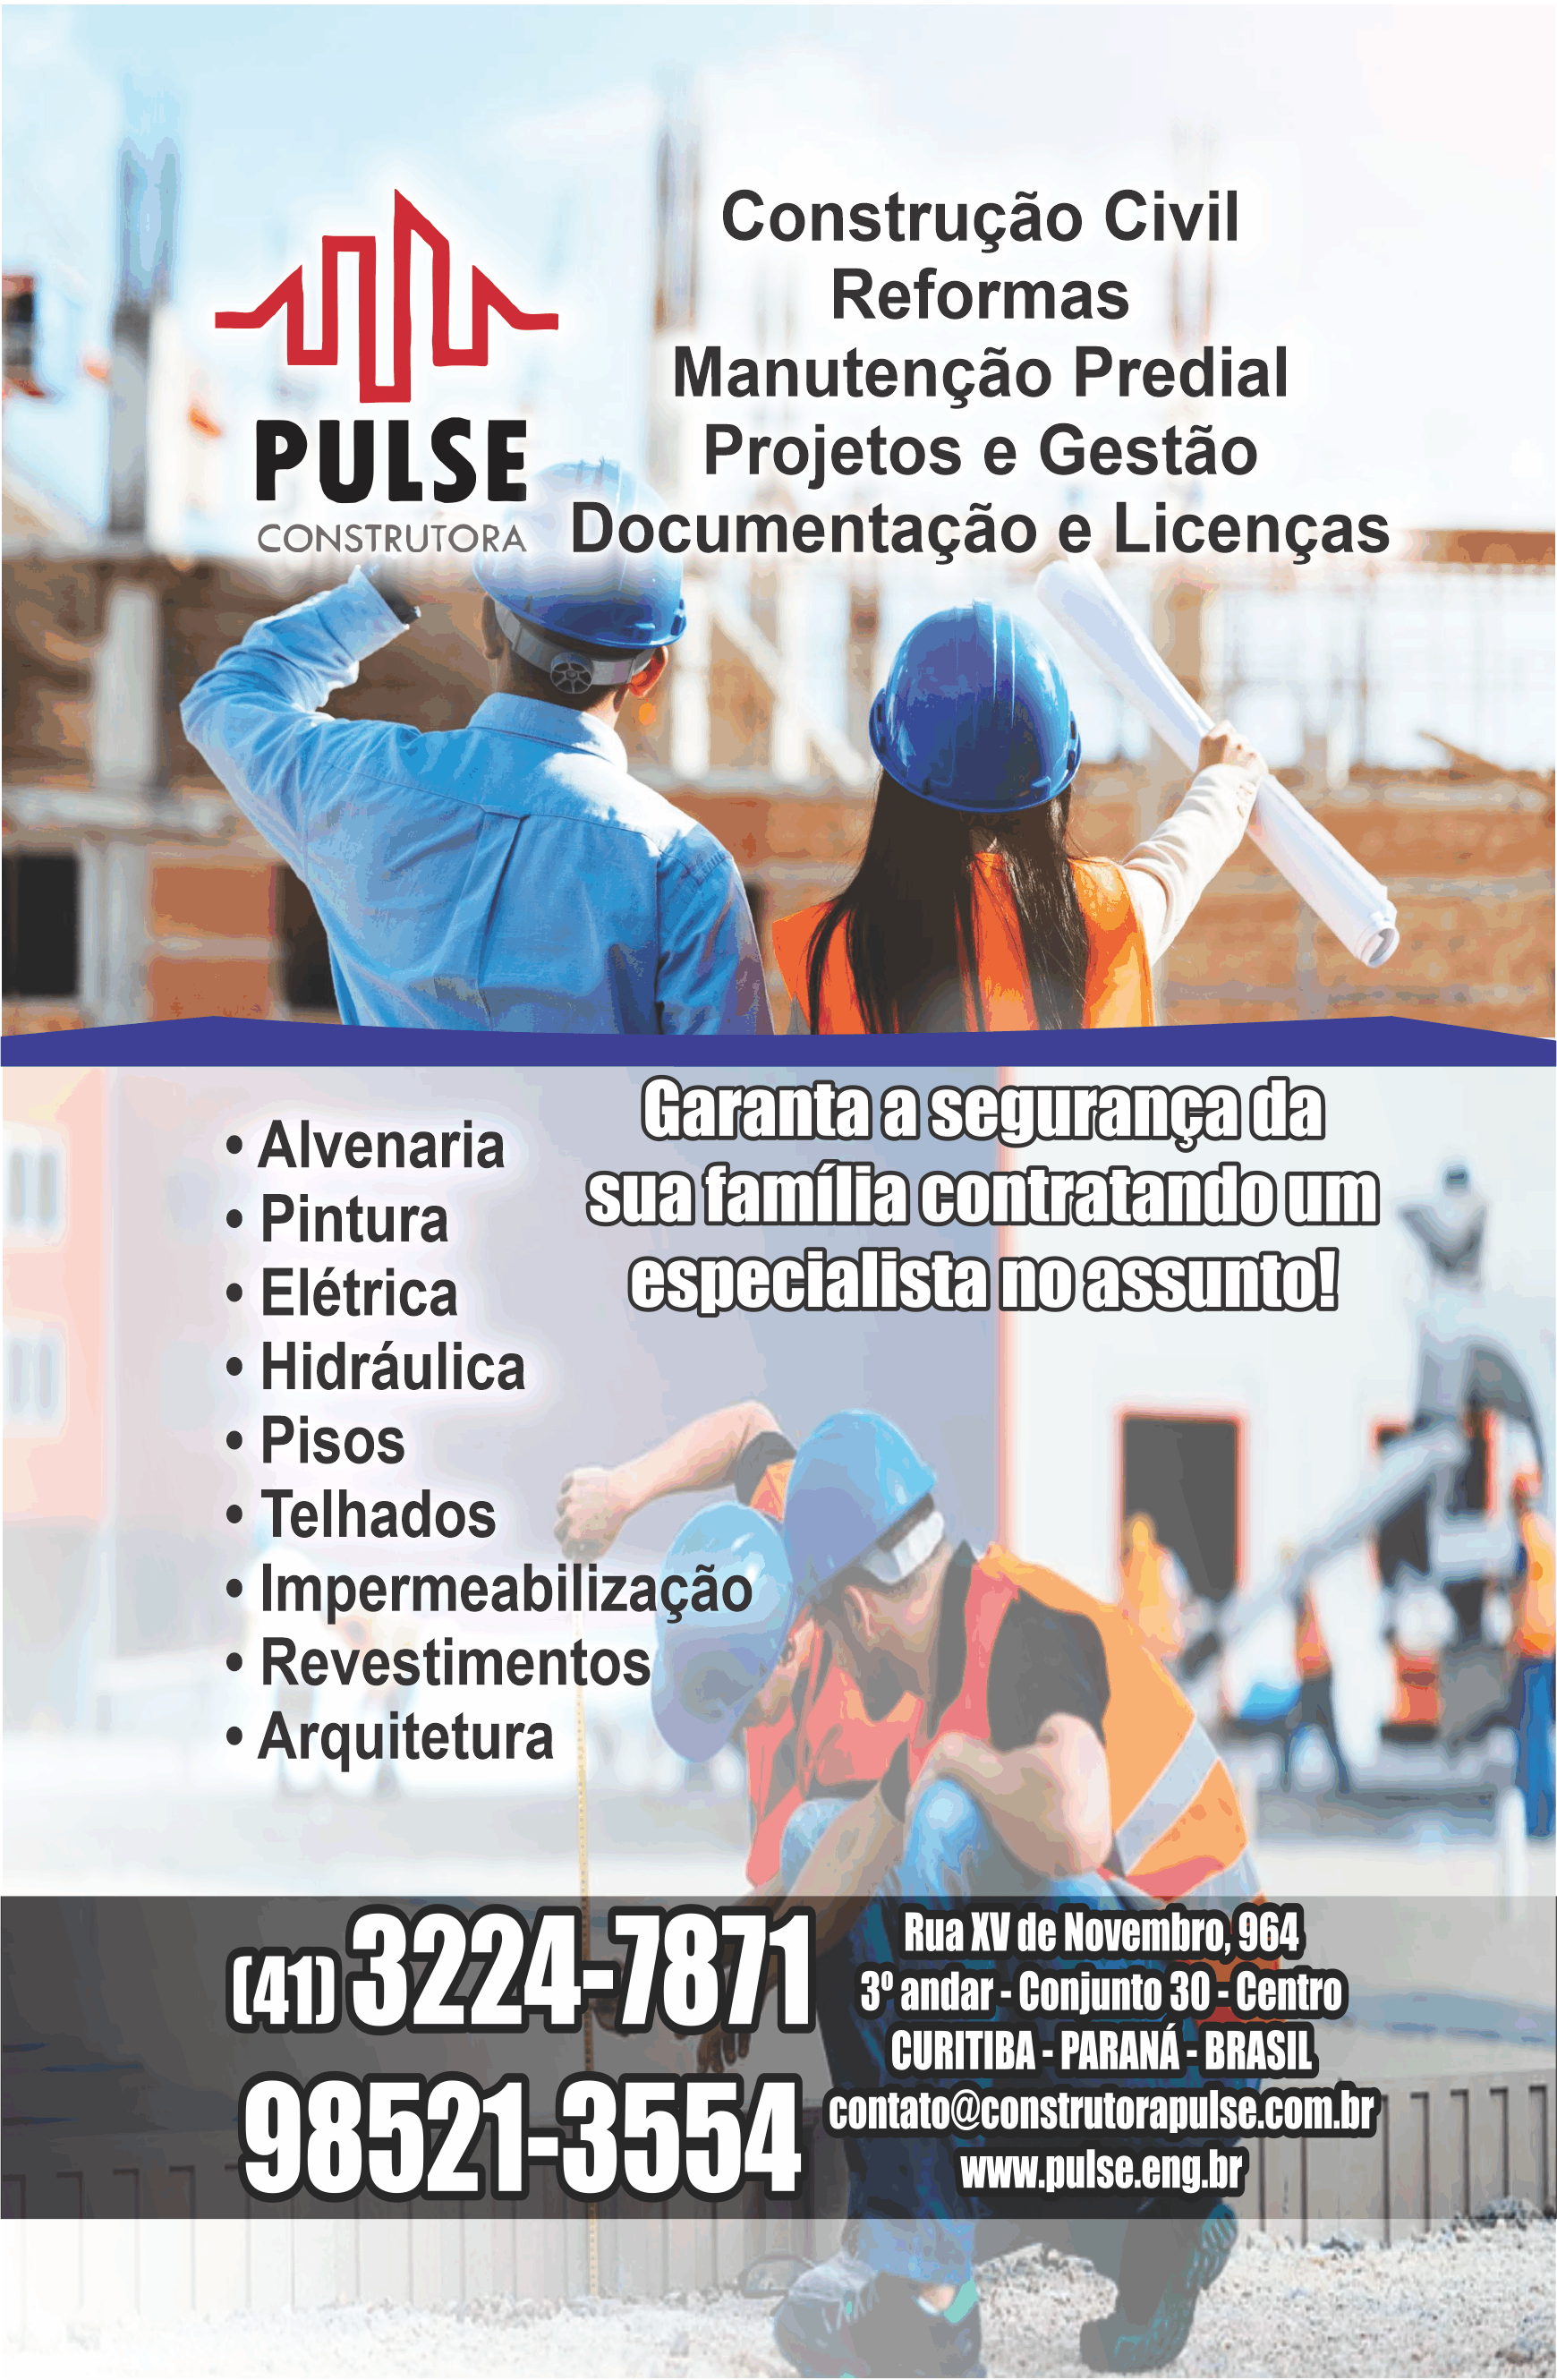  Pulse Construtora      RUA QUINZE DE NOVEMBRO, 964, CURITIBA - PR  Fones: (41) 3224-7871 / (41) 98521-3554